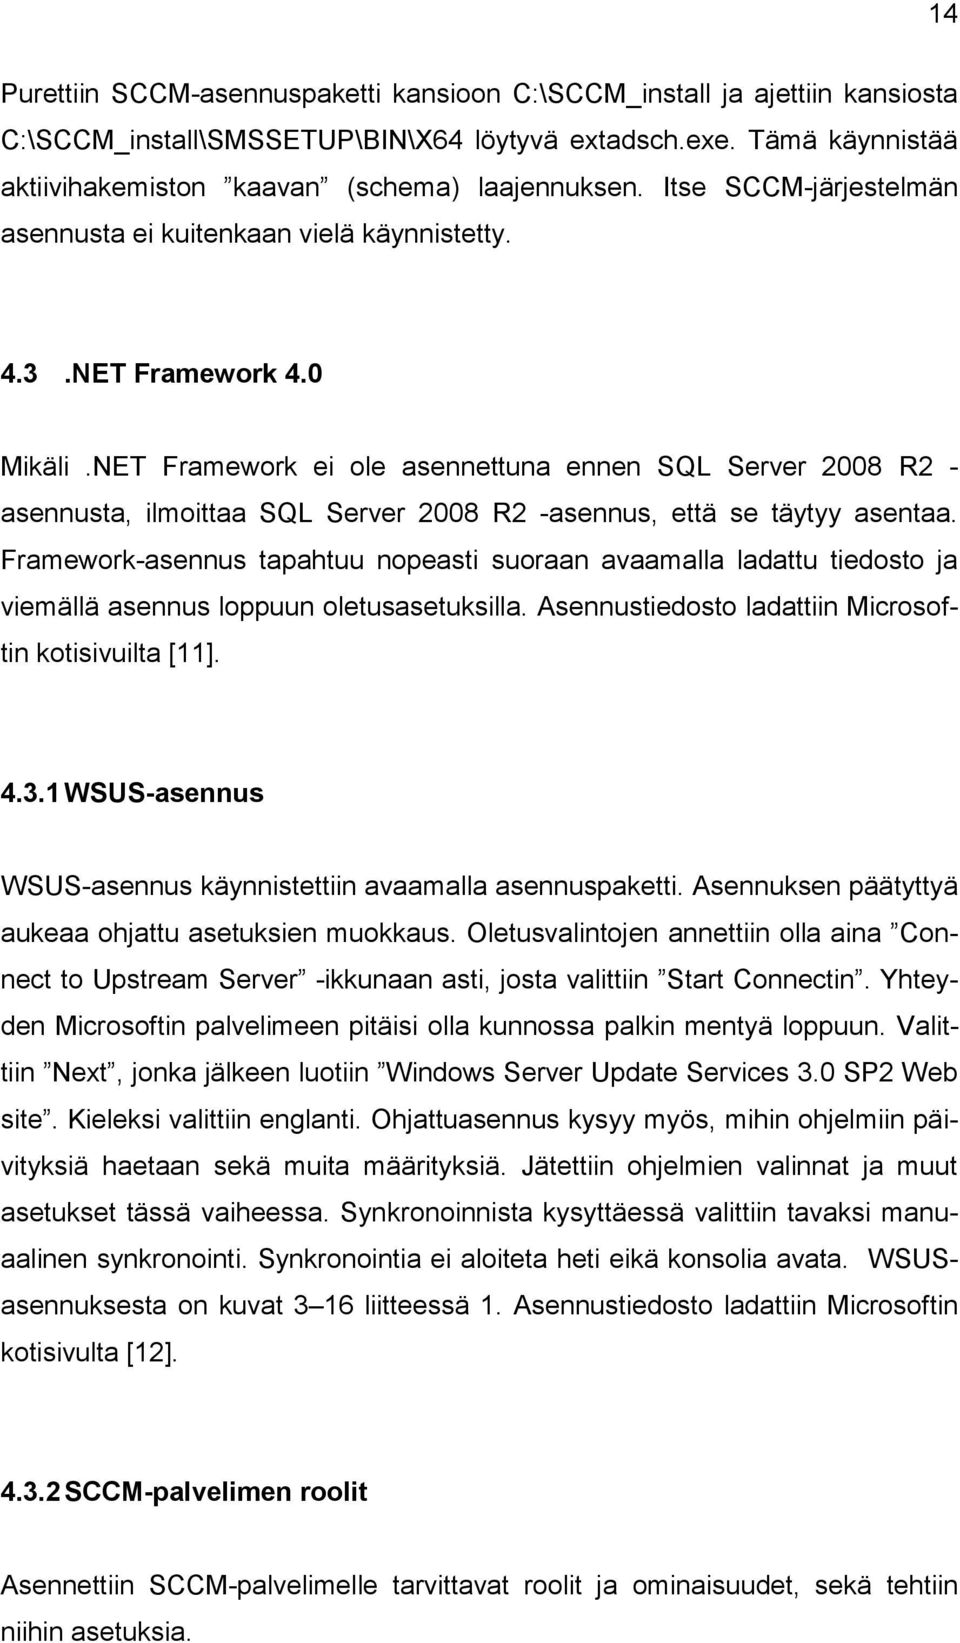 NET Framework ei ole asennettuna ennen SQL Server 2008 R2 - asennusta, ilmoittaa SQL Server 2008 R2 -asennus, että se täytyy asentaa.